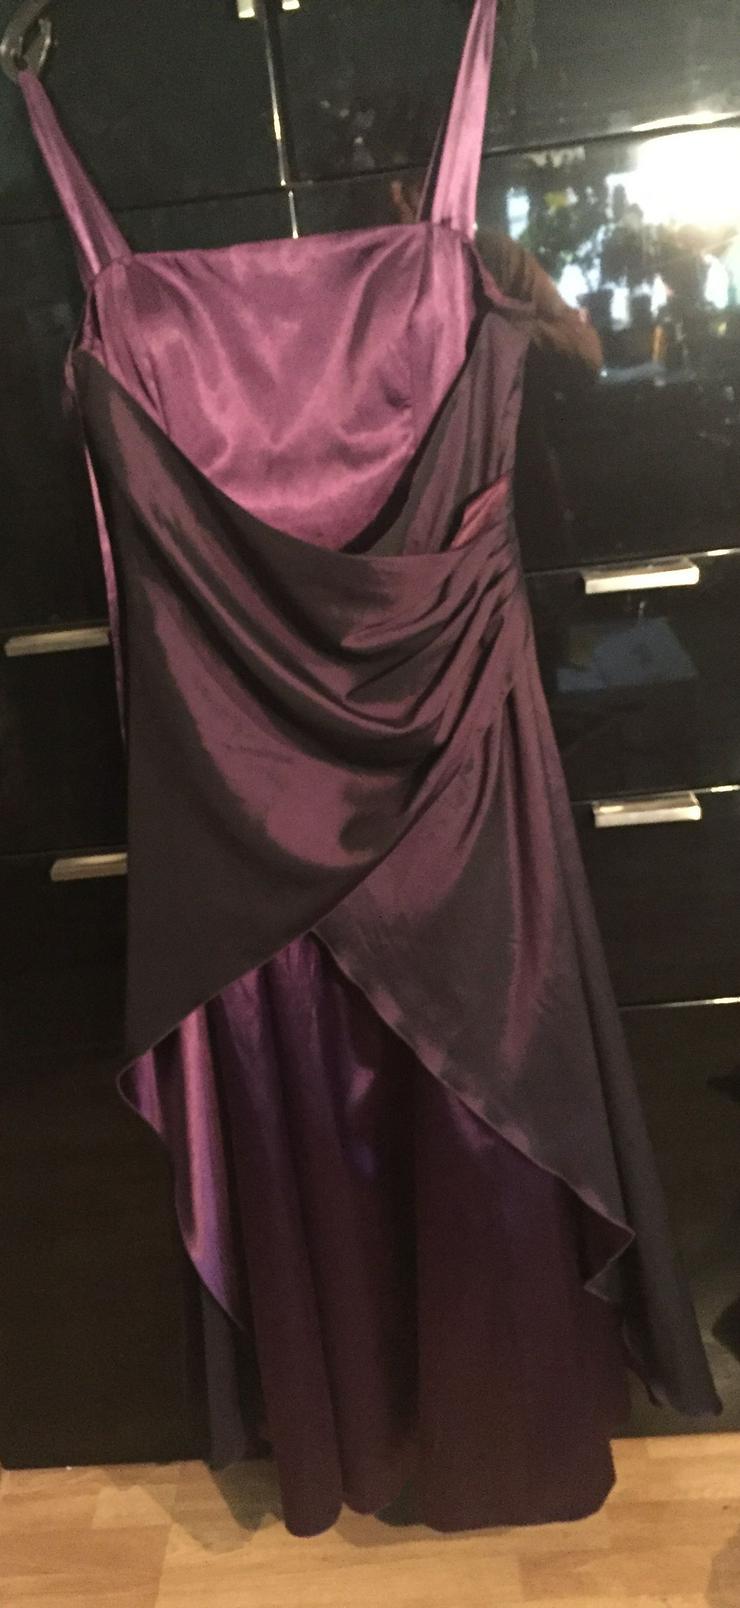 Bild 2: lila/violettfarbenes Satin-Abendkleid, figurnah und schlank machend.